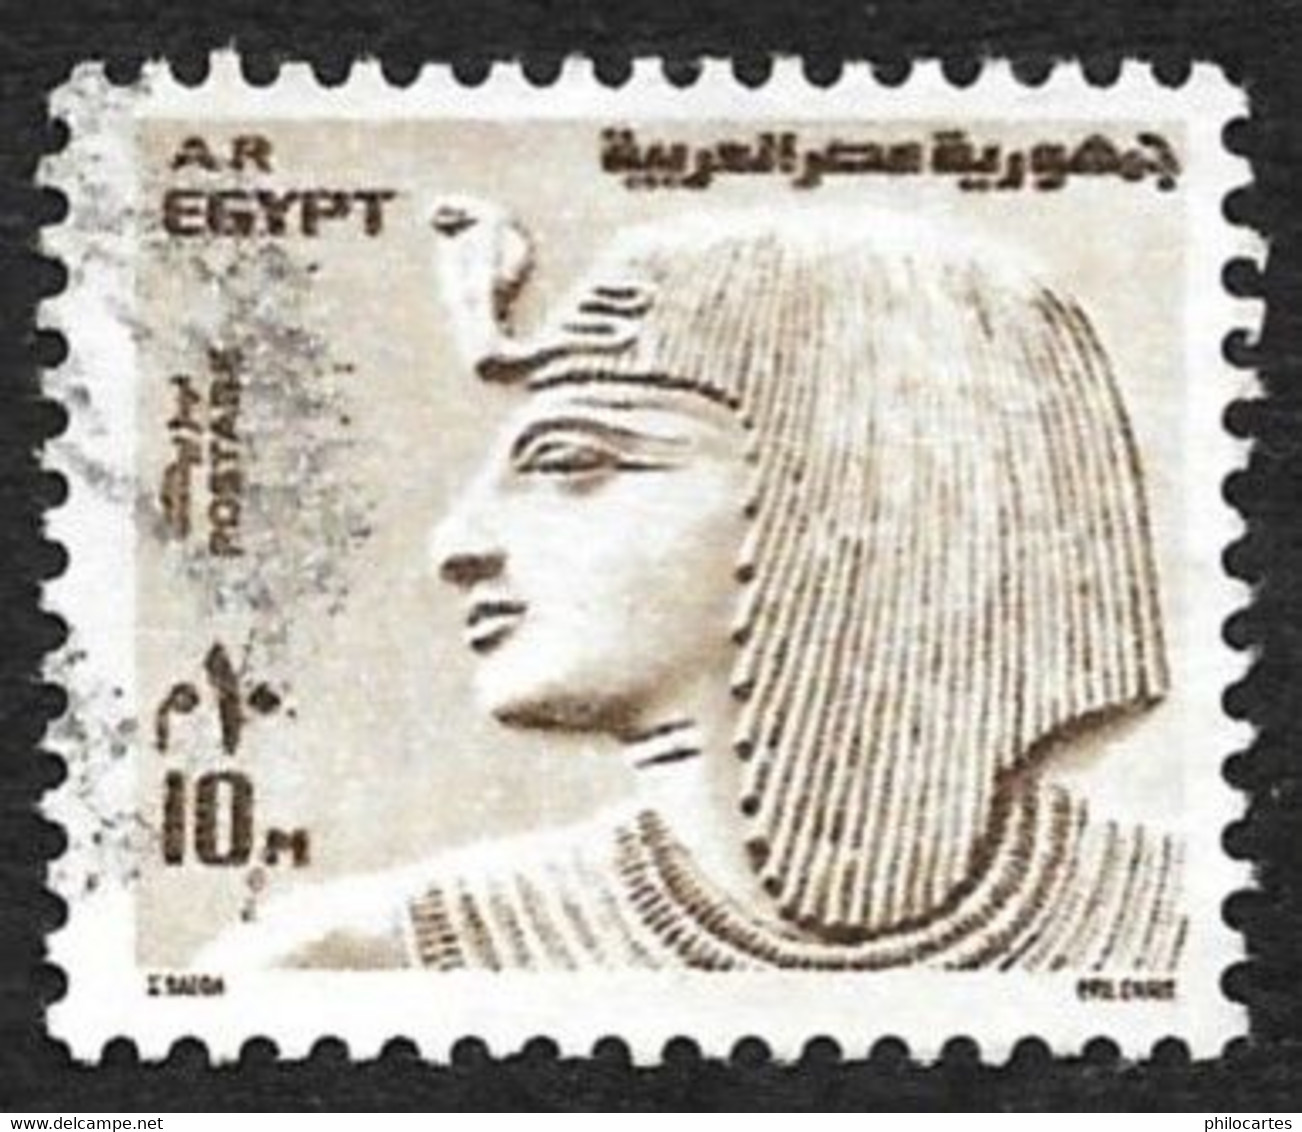 EGYPTE 1973  -  YT 926  -  Sethi 1°   - Oblitéré - Gebruikt